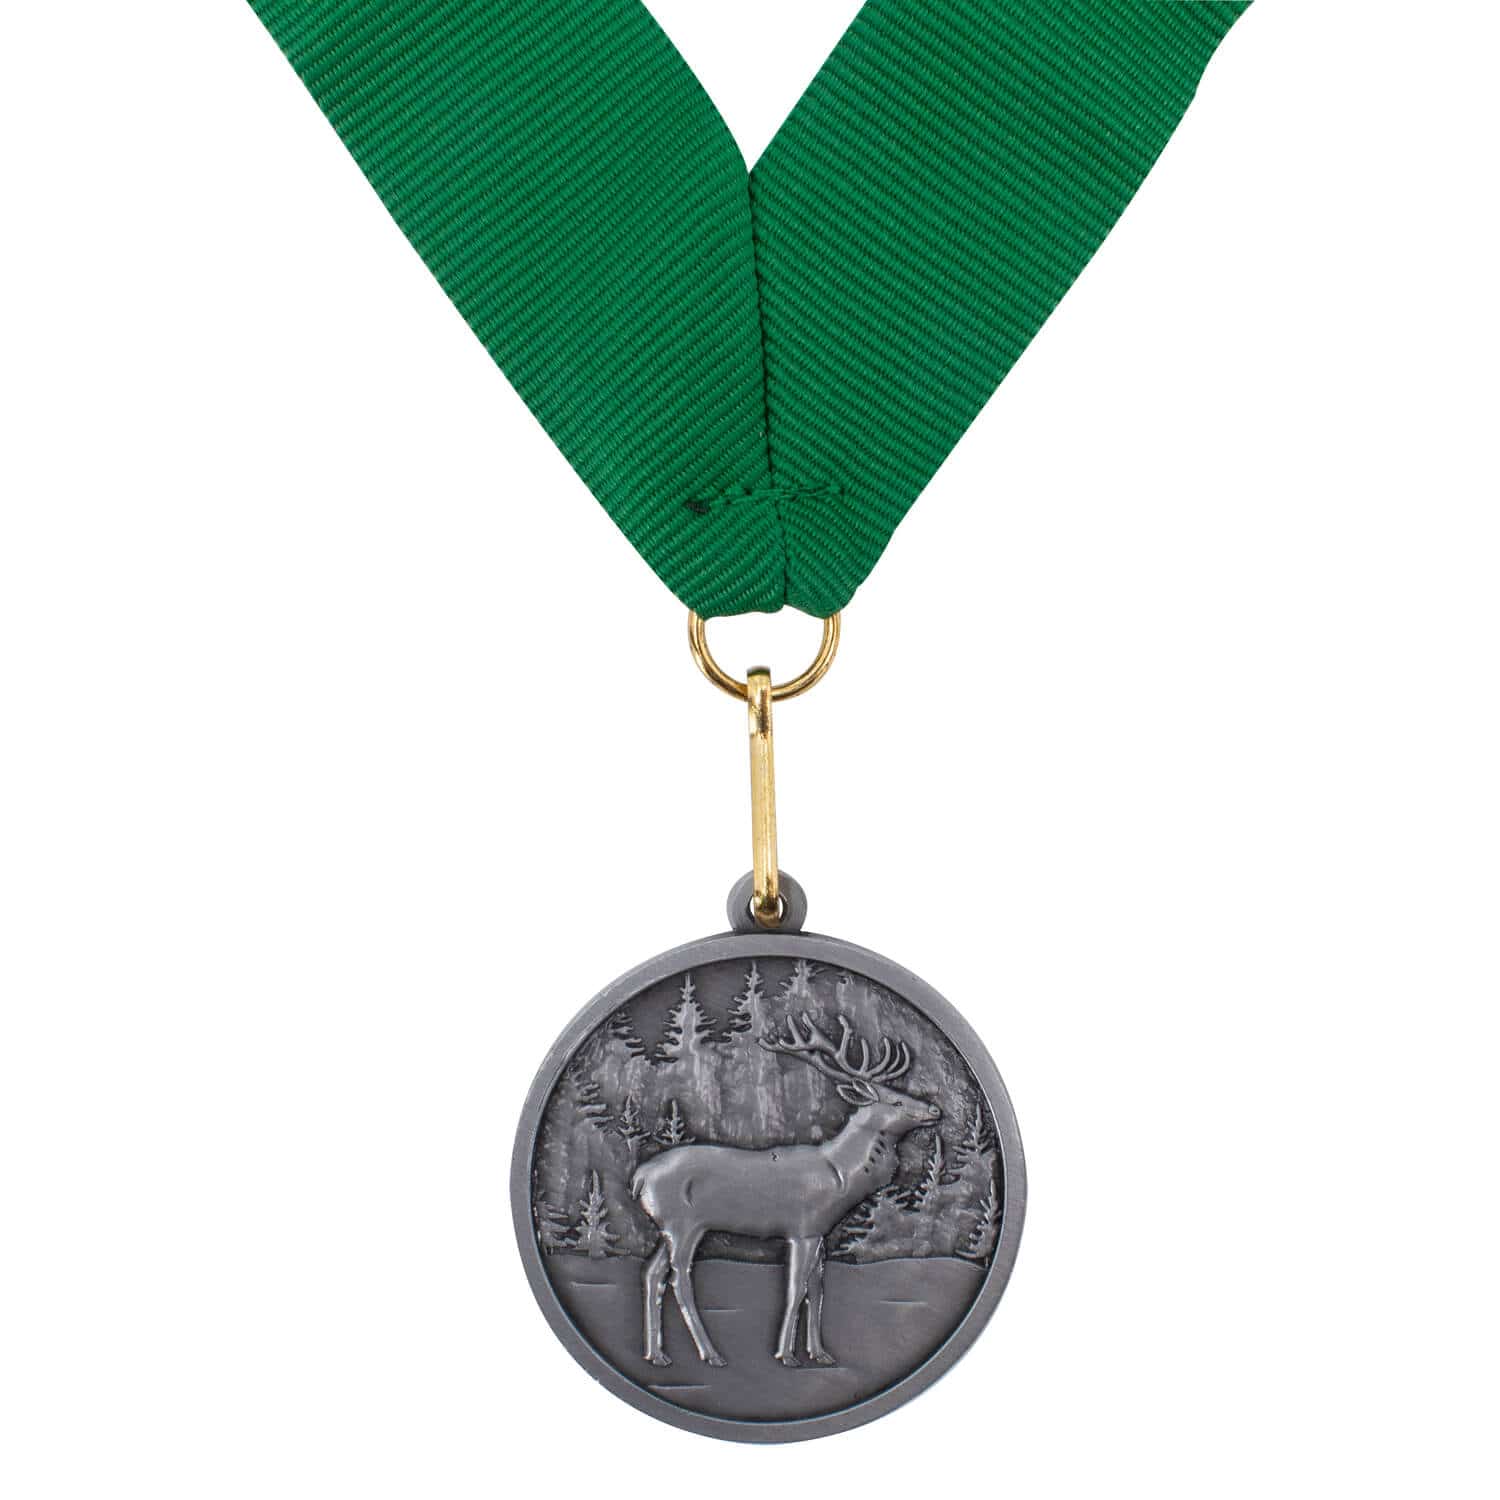 Jagdscheibe "Weidmann" mit Jagd-Medaillen und grünem Band